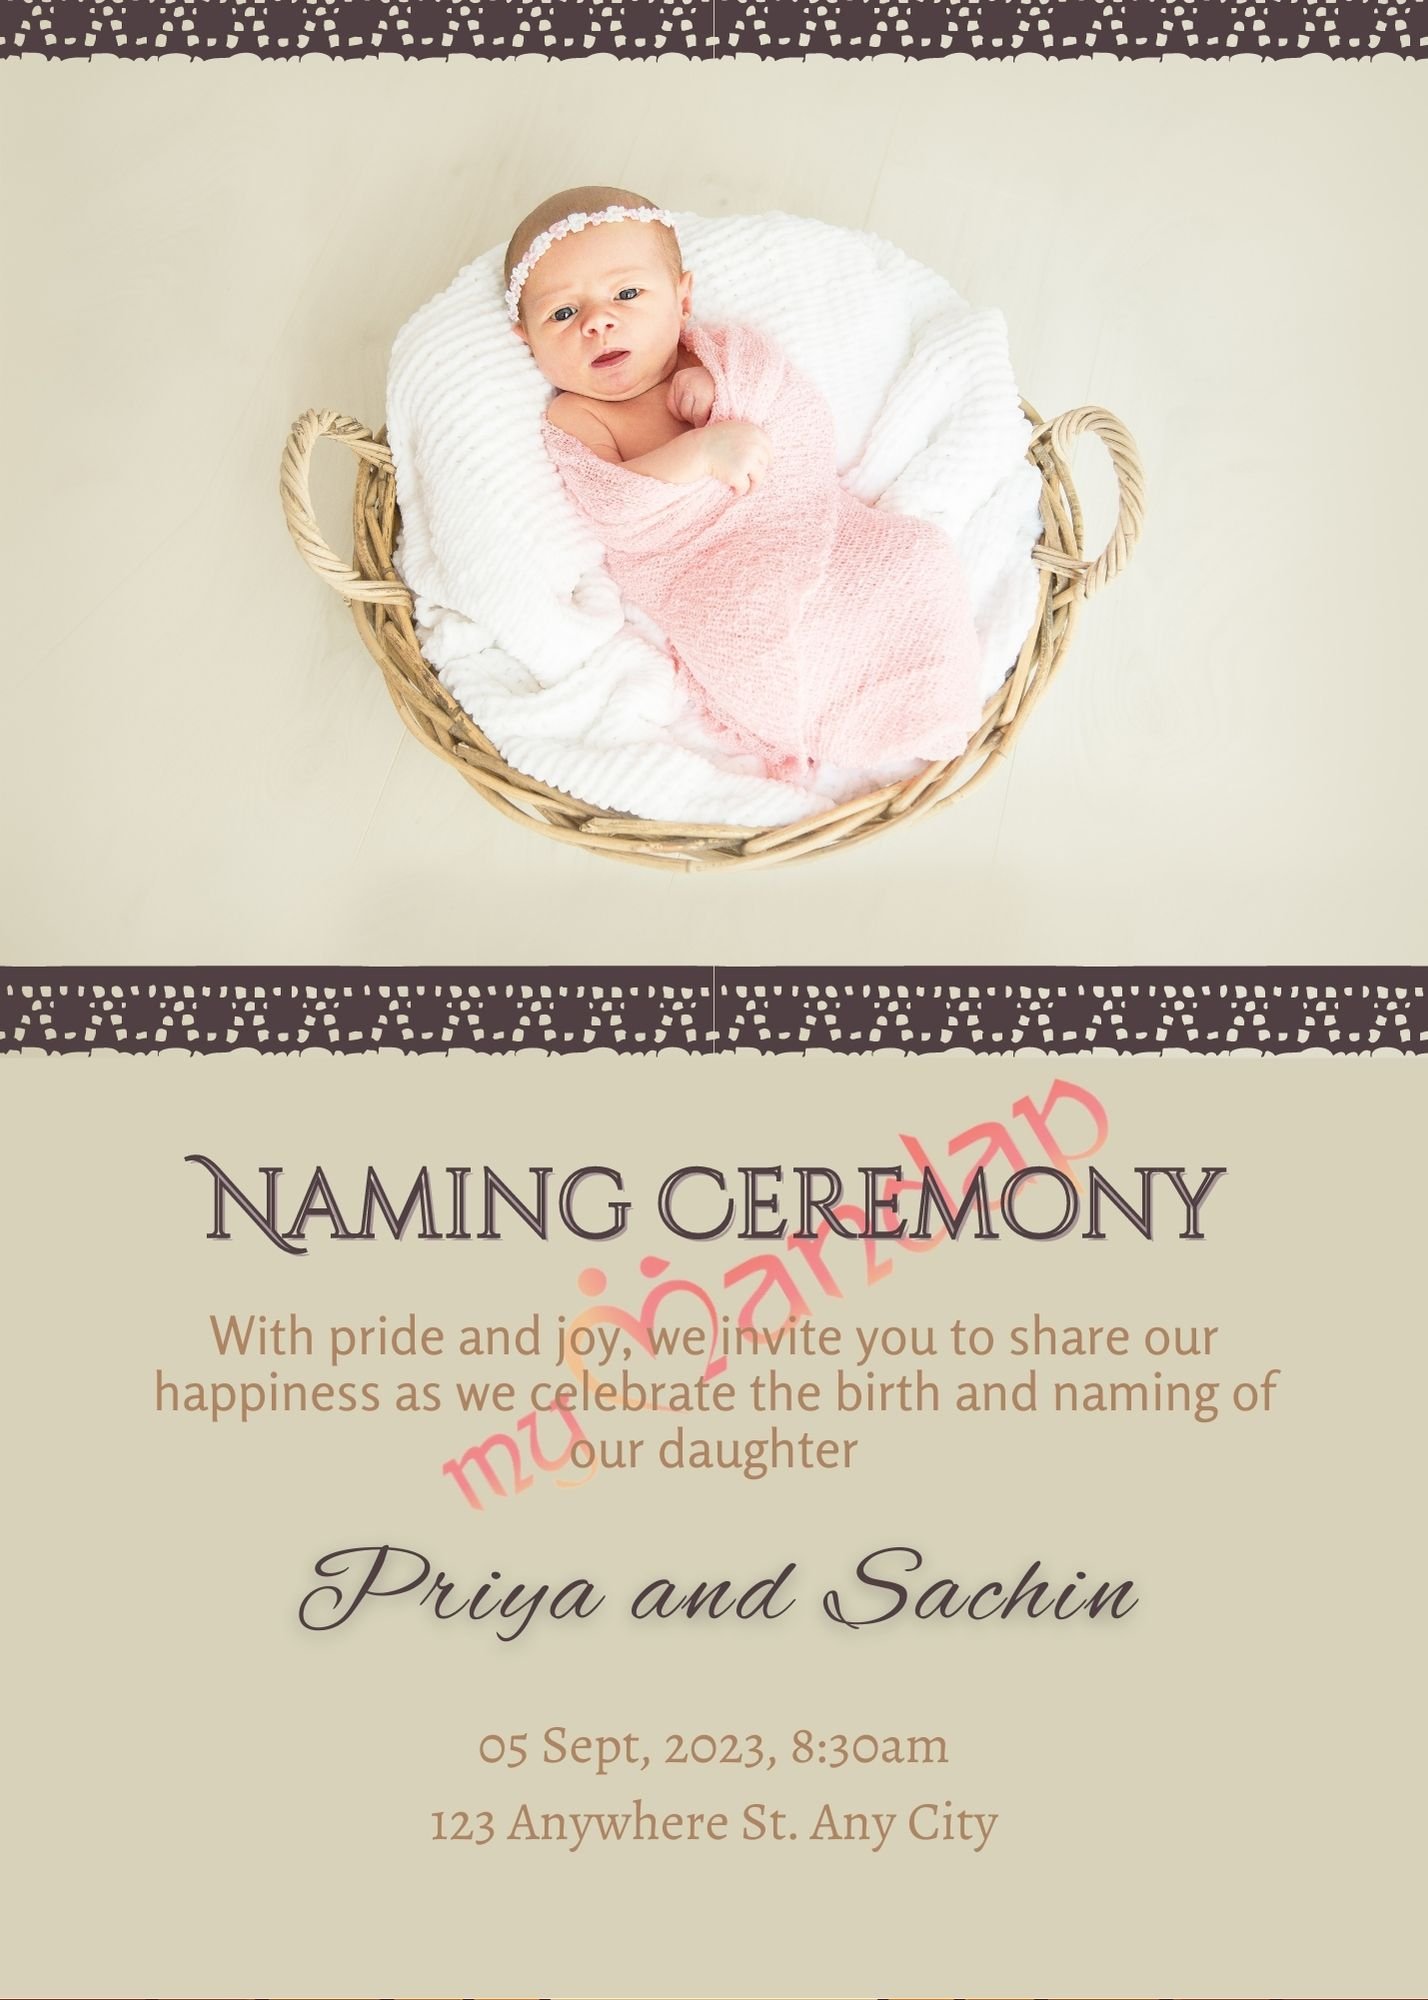 Naming Ceremony invite